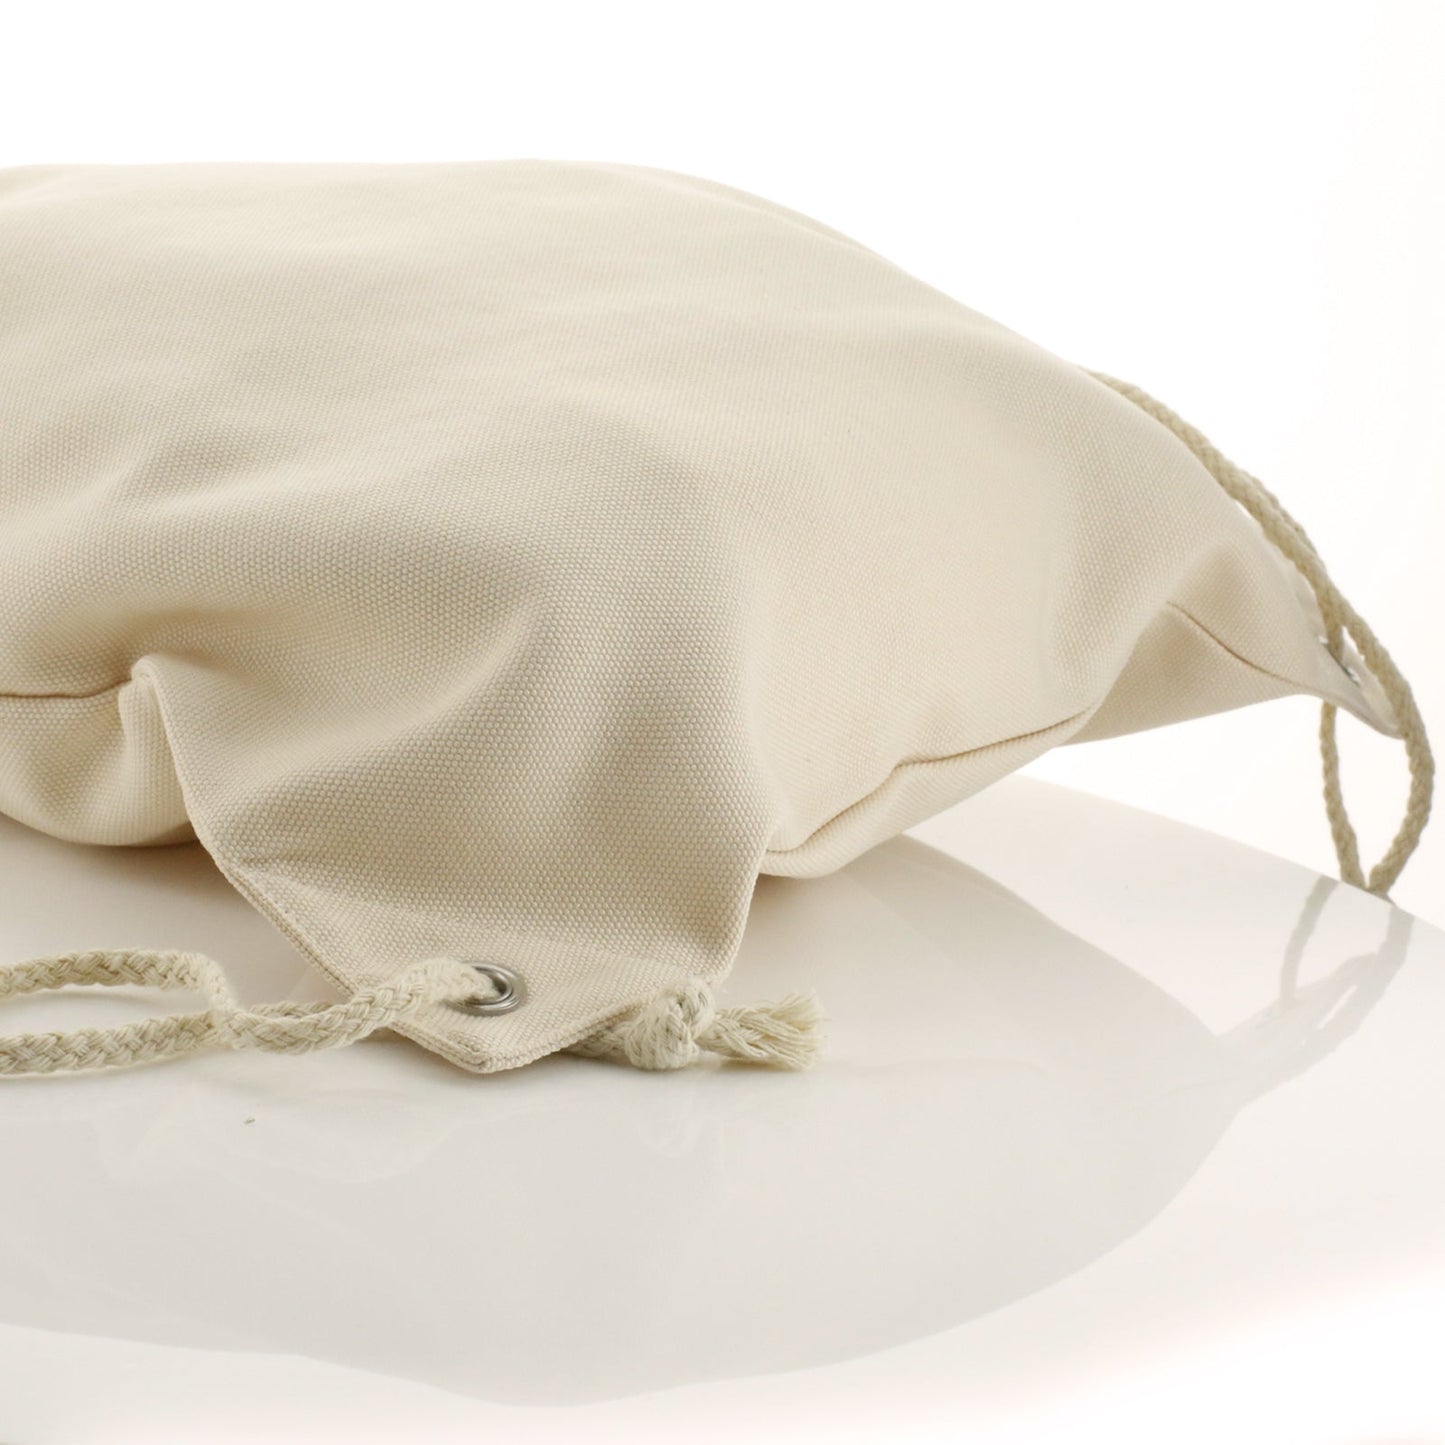 Personalisierter Canvas-Rucksack mit Kordelzug, mit stilvollem Text und Meerjungfrau-Liebesbotschaft